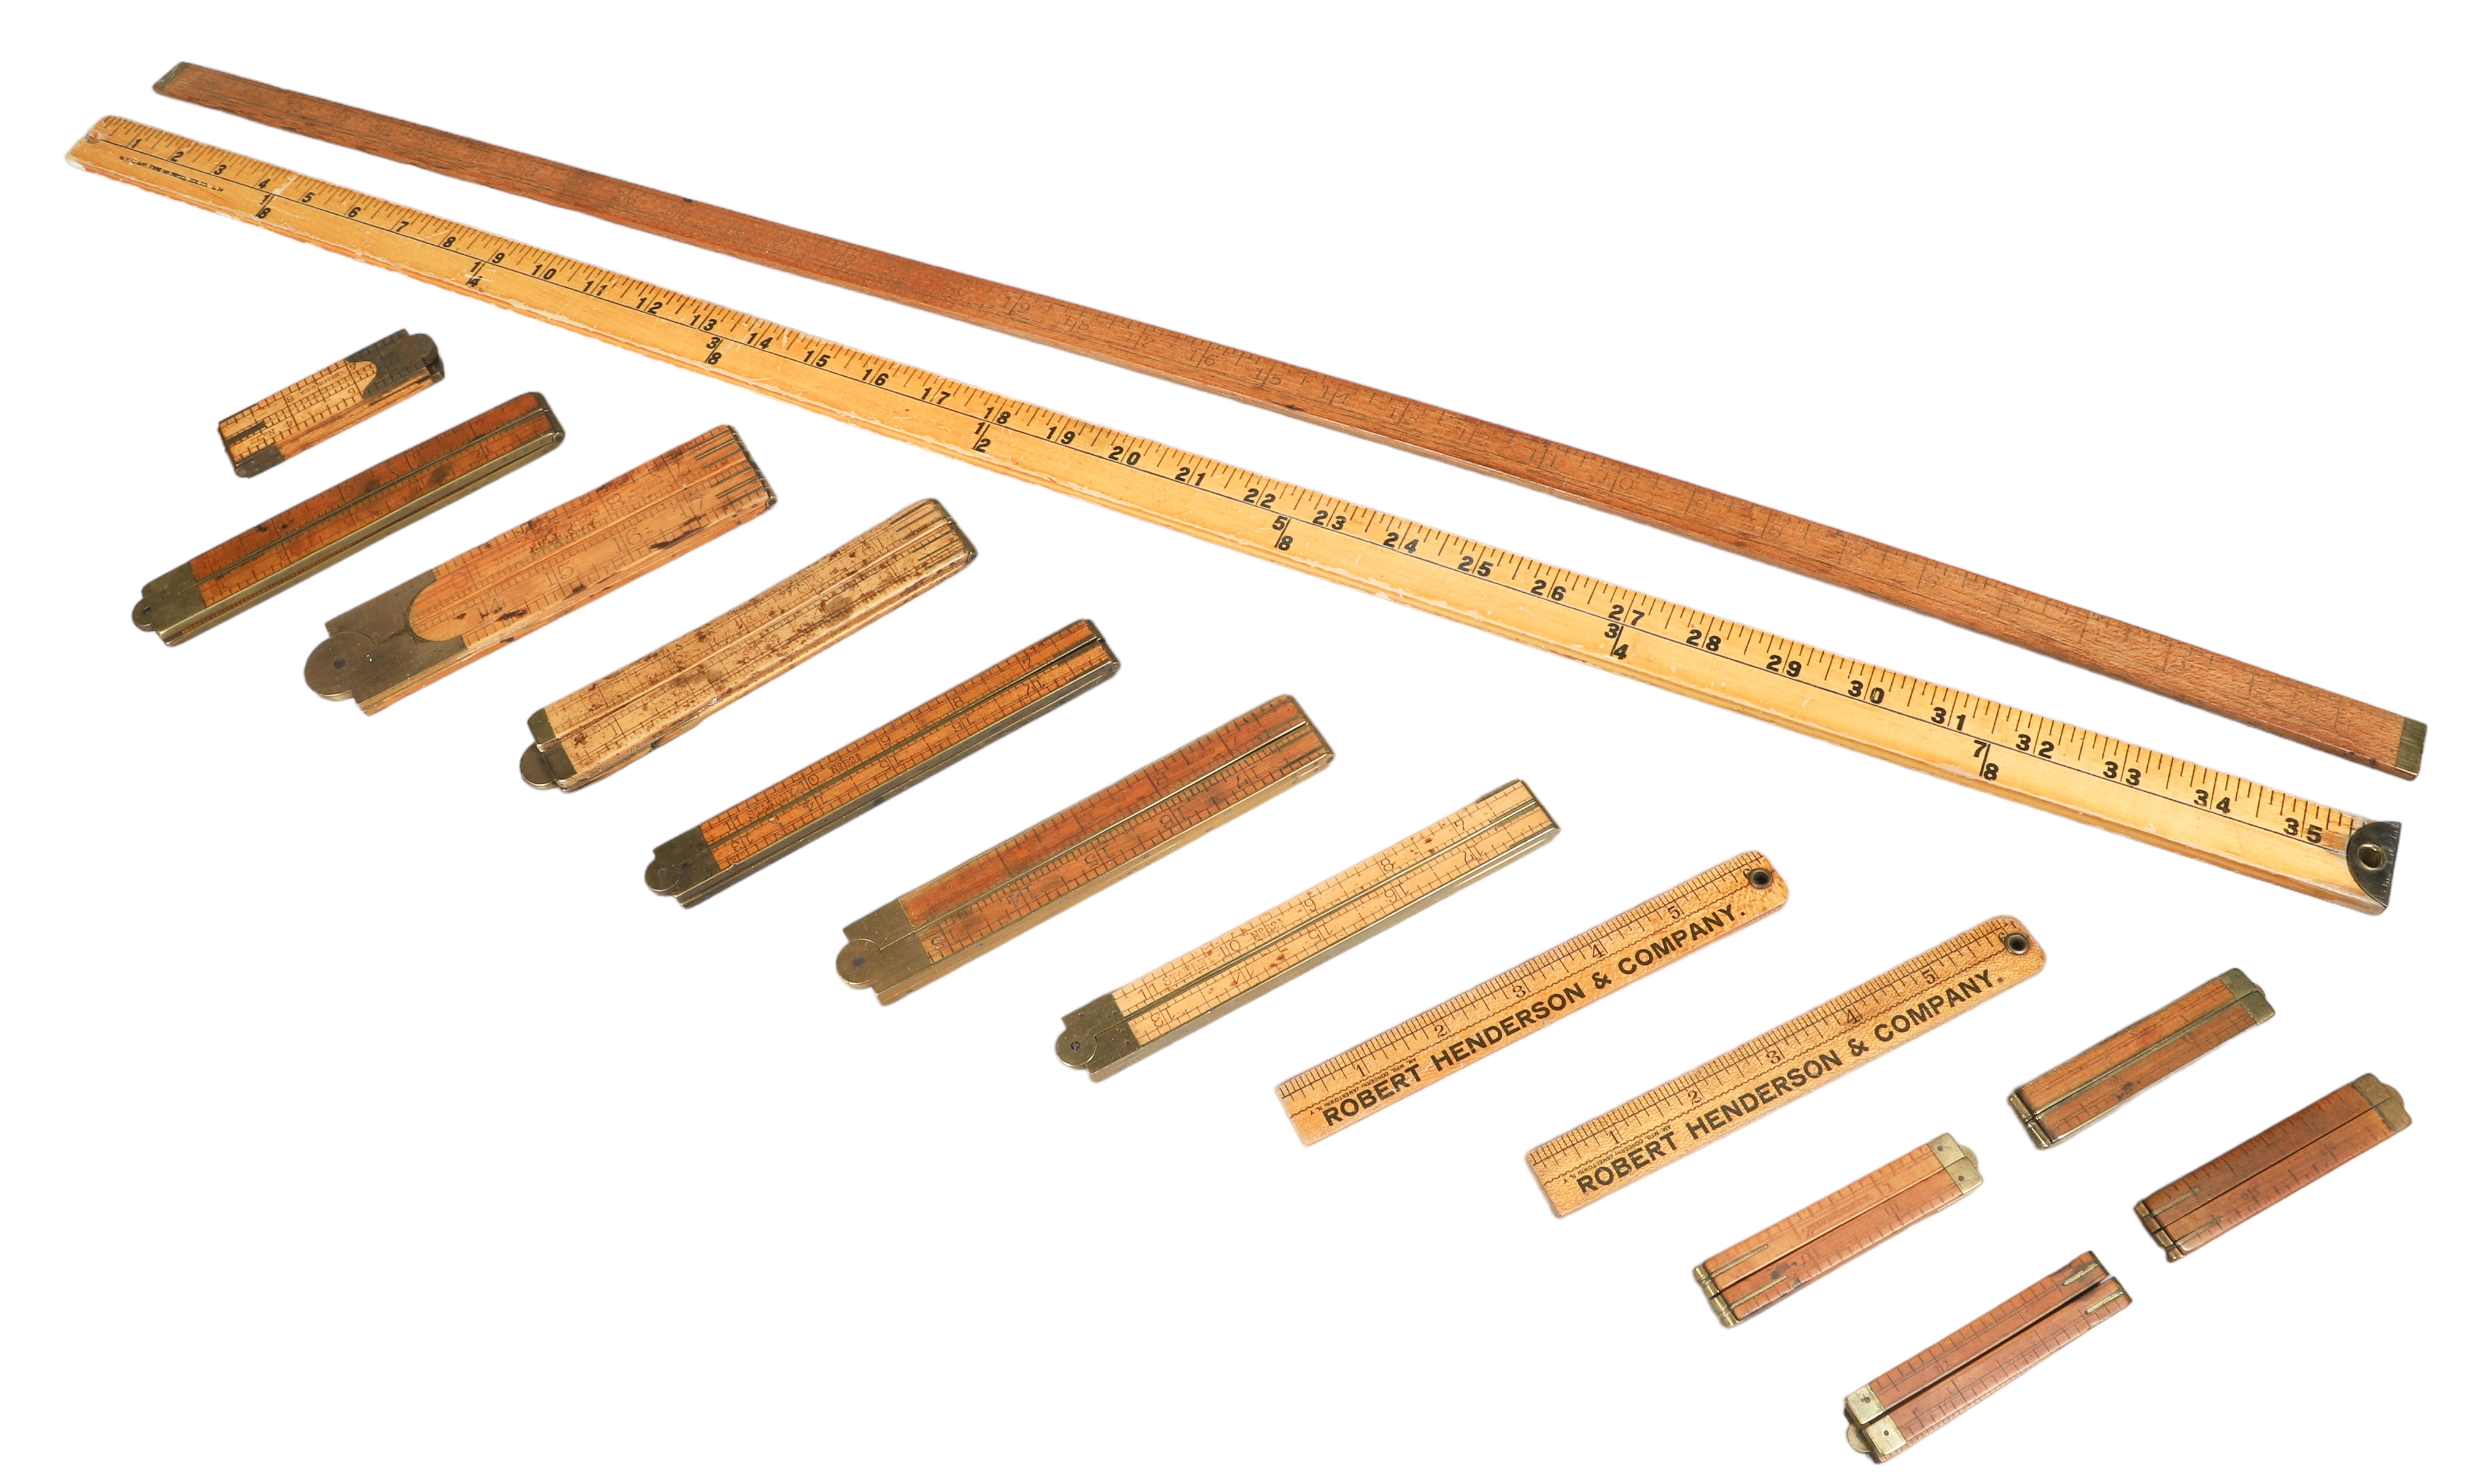  17 Measuring sticks c o 11  2e165d